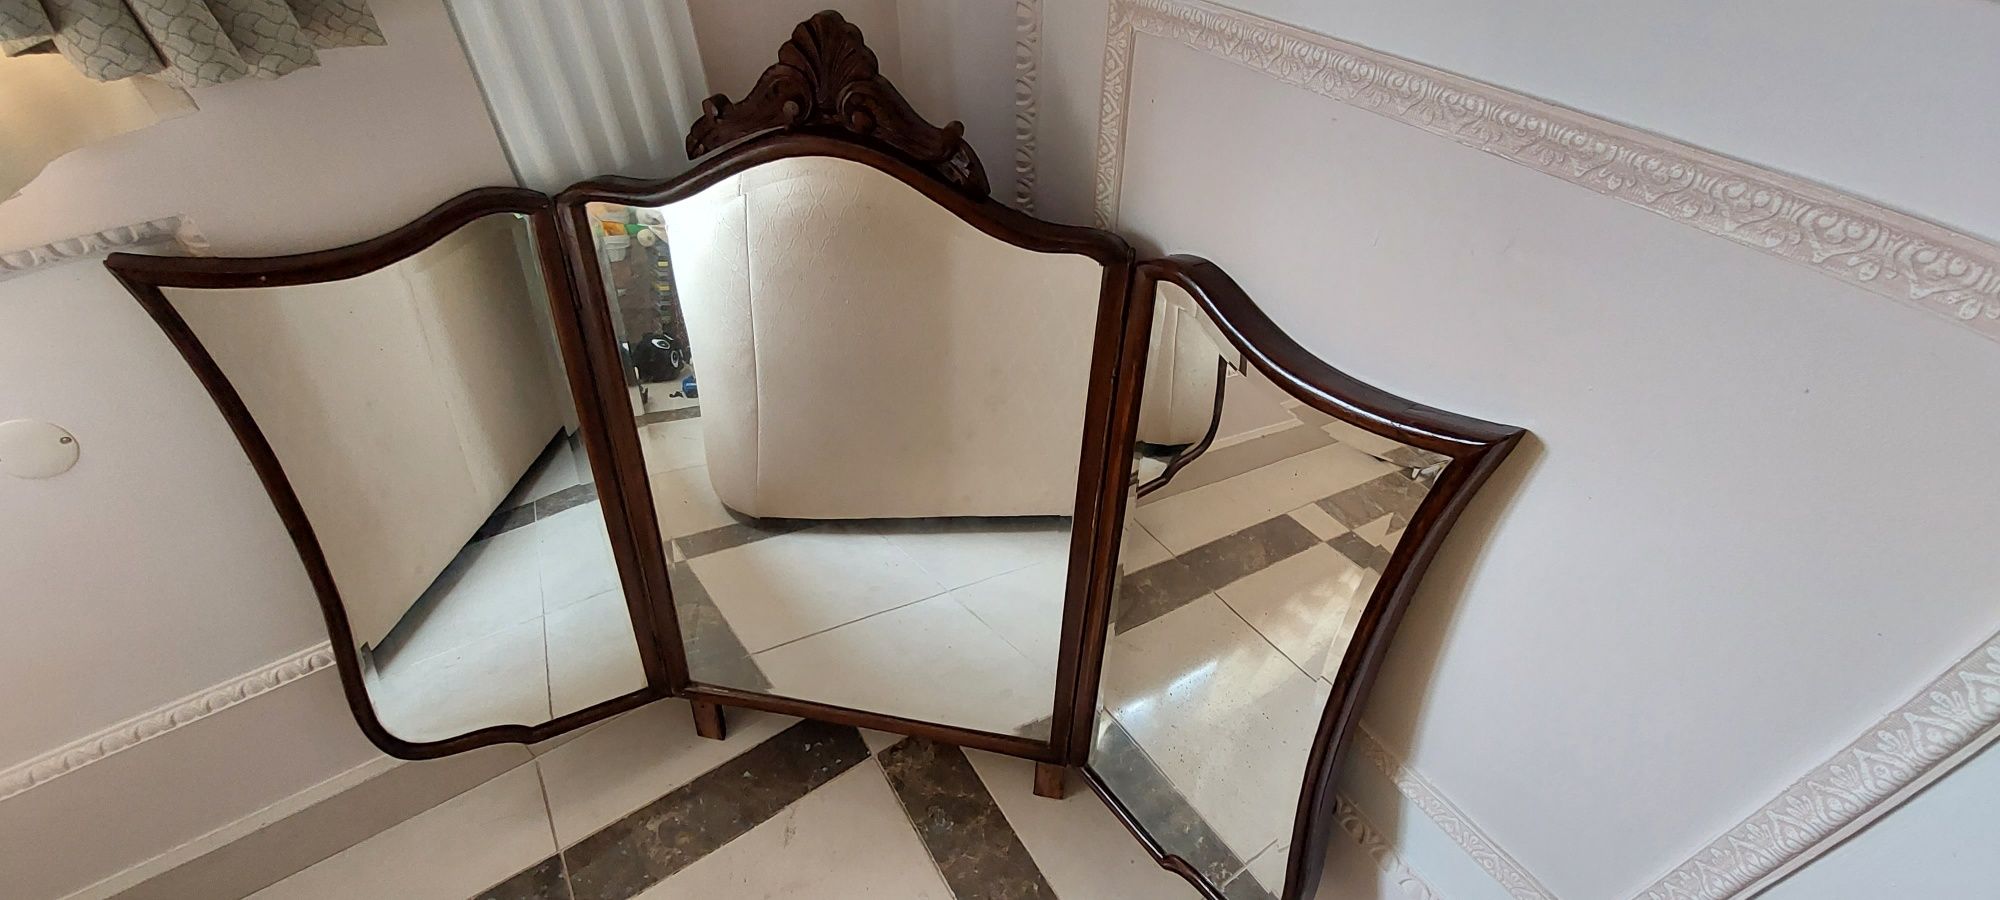 Espelho antigo com laterais